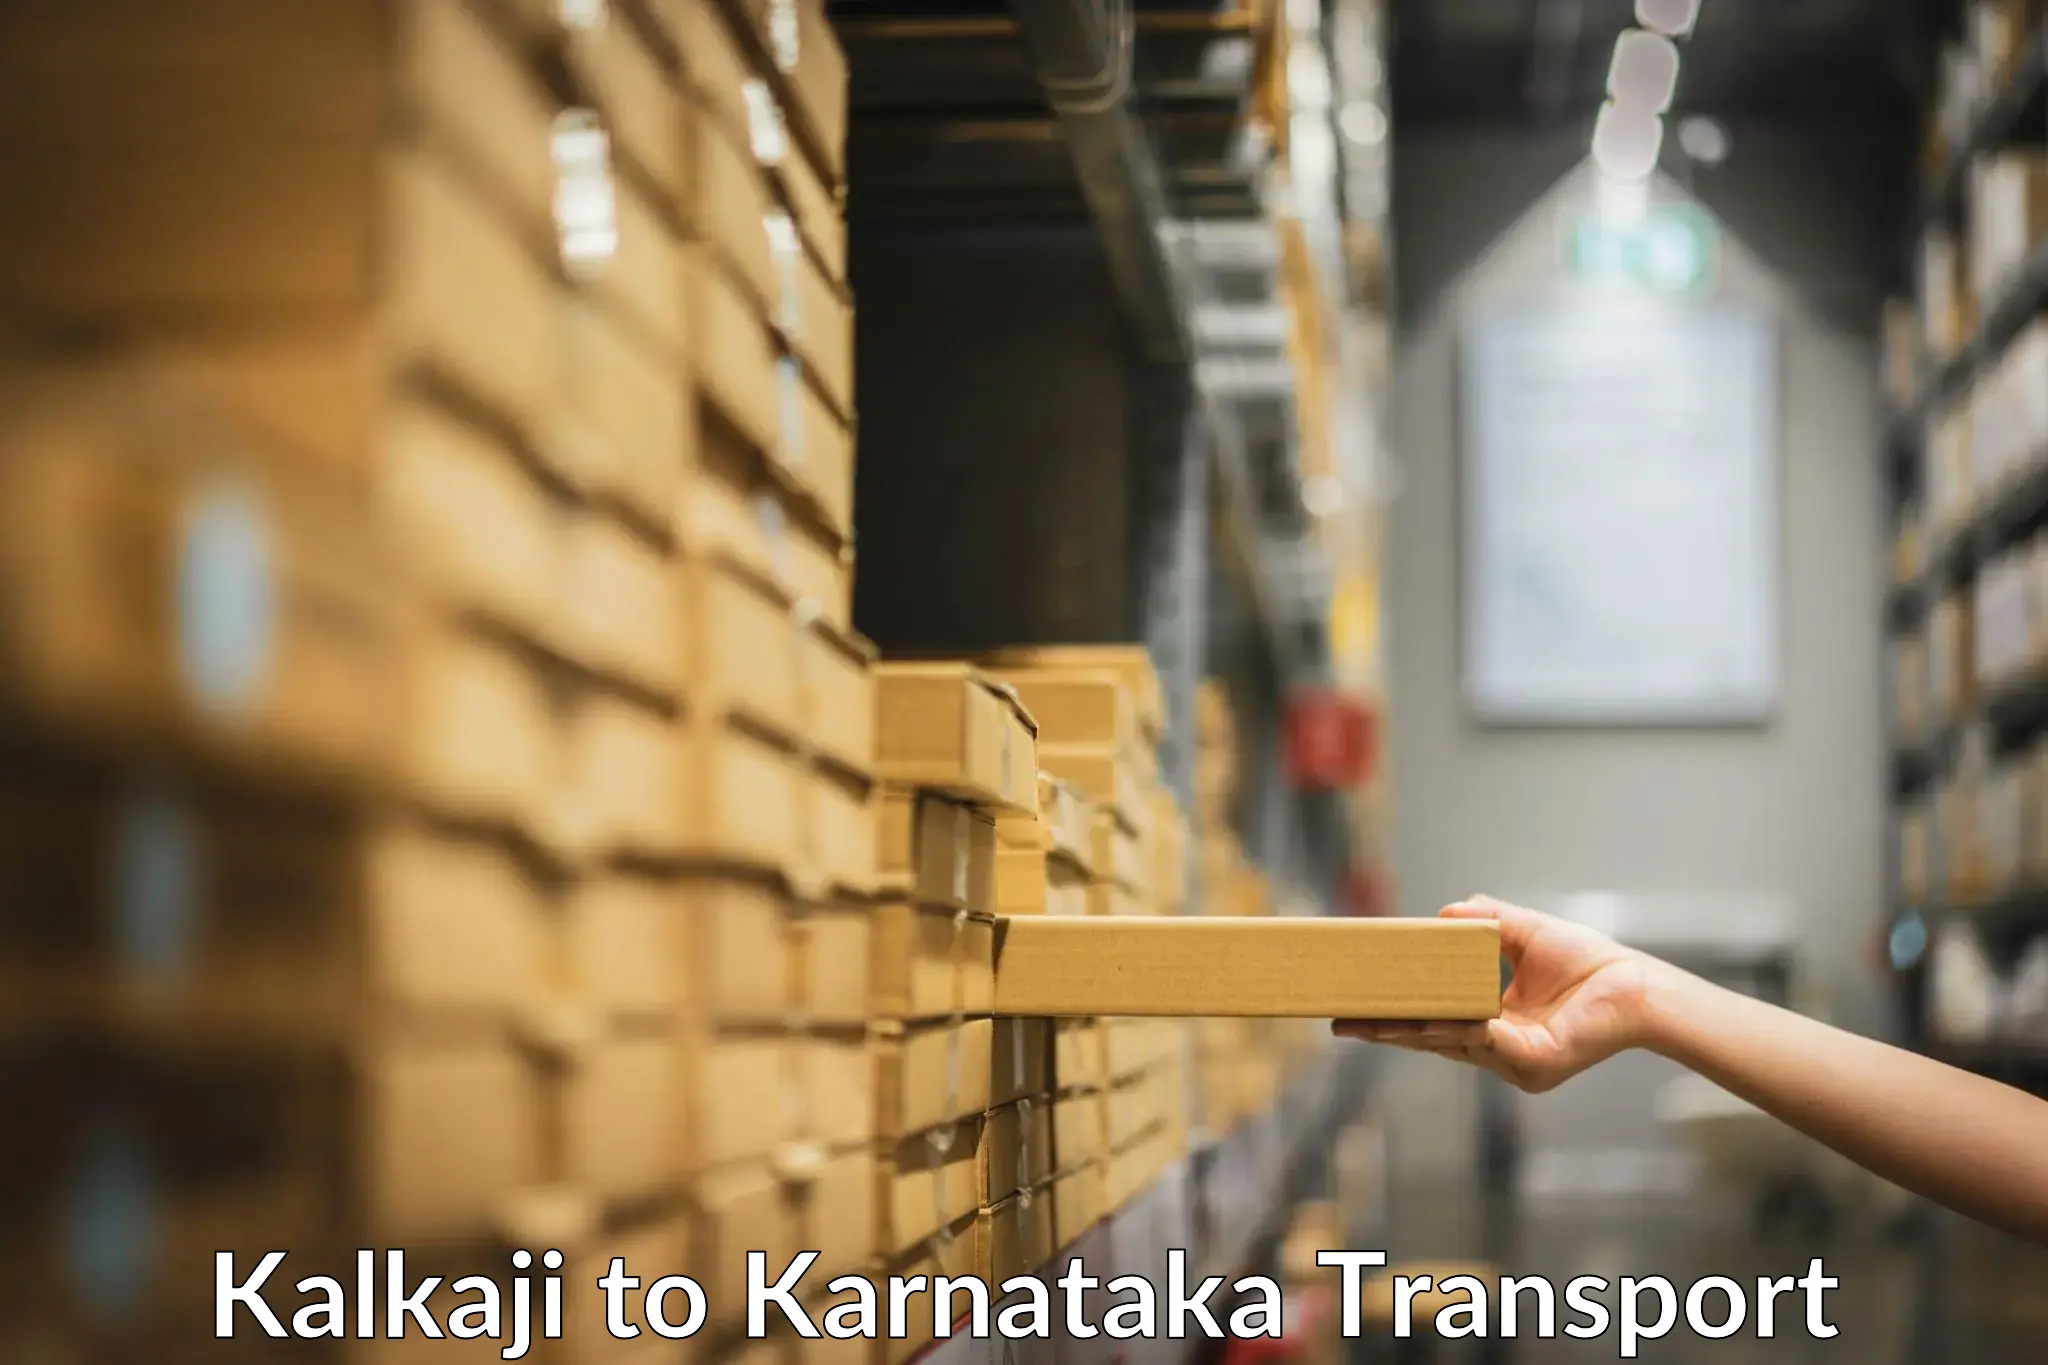 International cargo transportation services Kalkaji to Kollegal